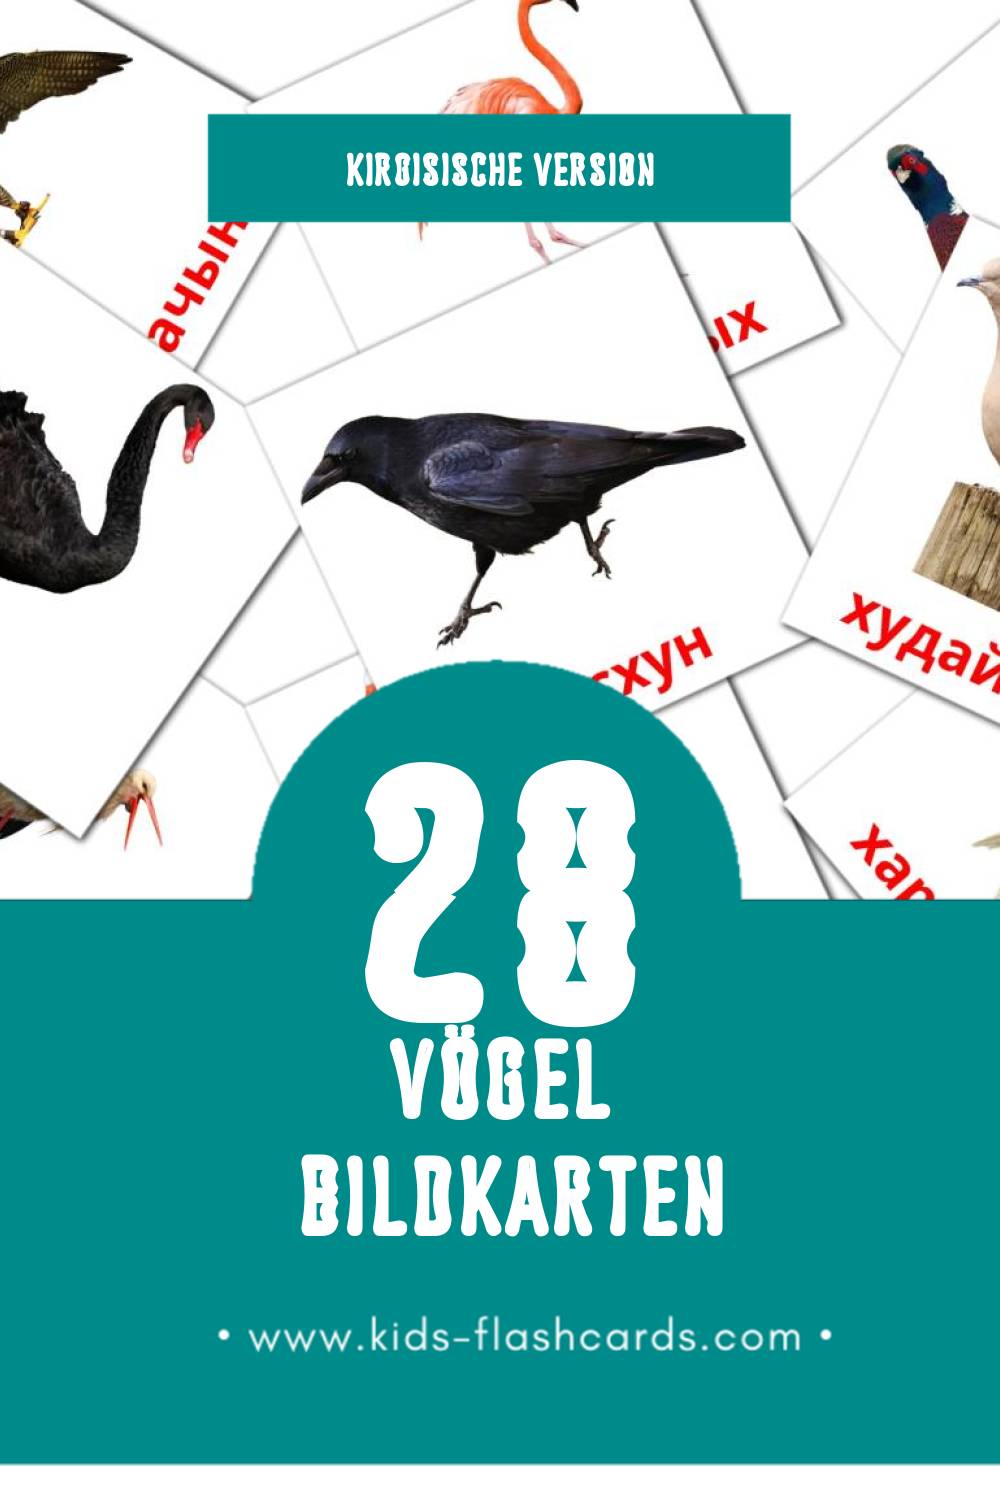 Visual Хустар Flashcards für Kleinkinder (28 Karten in Kirgisisch)